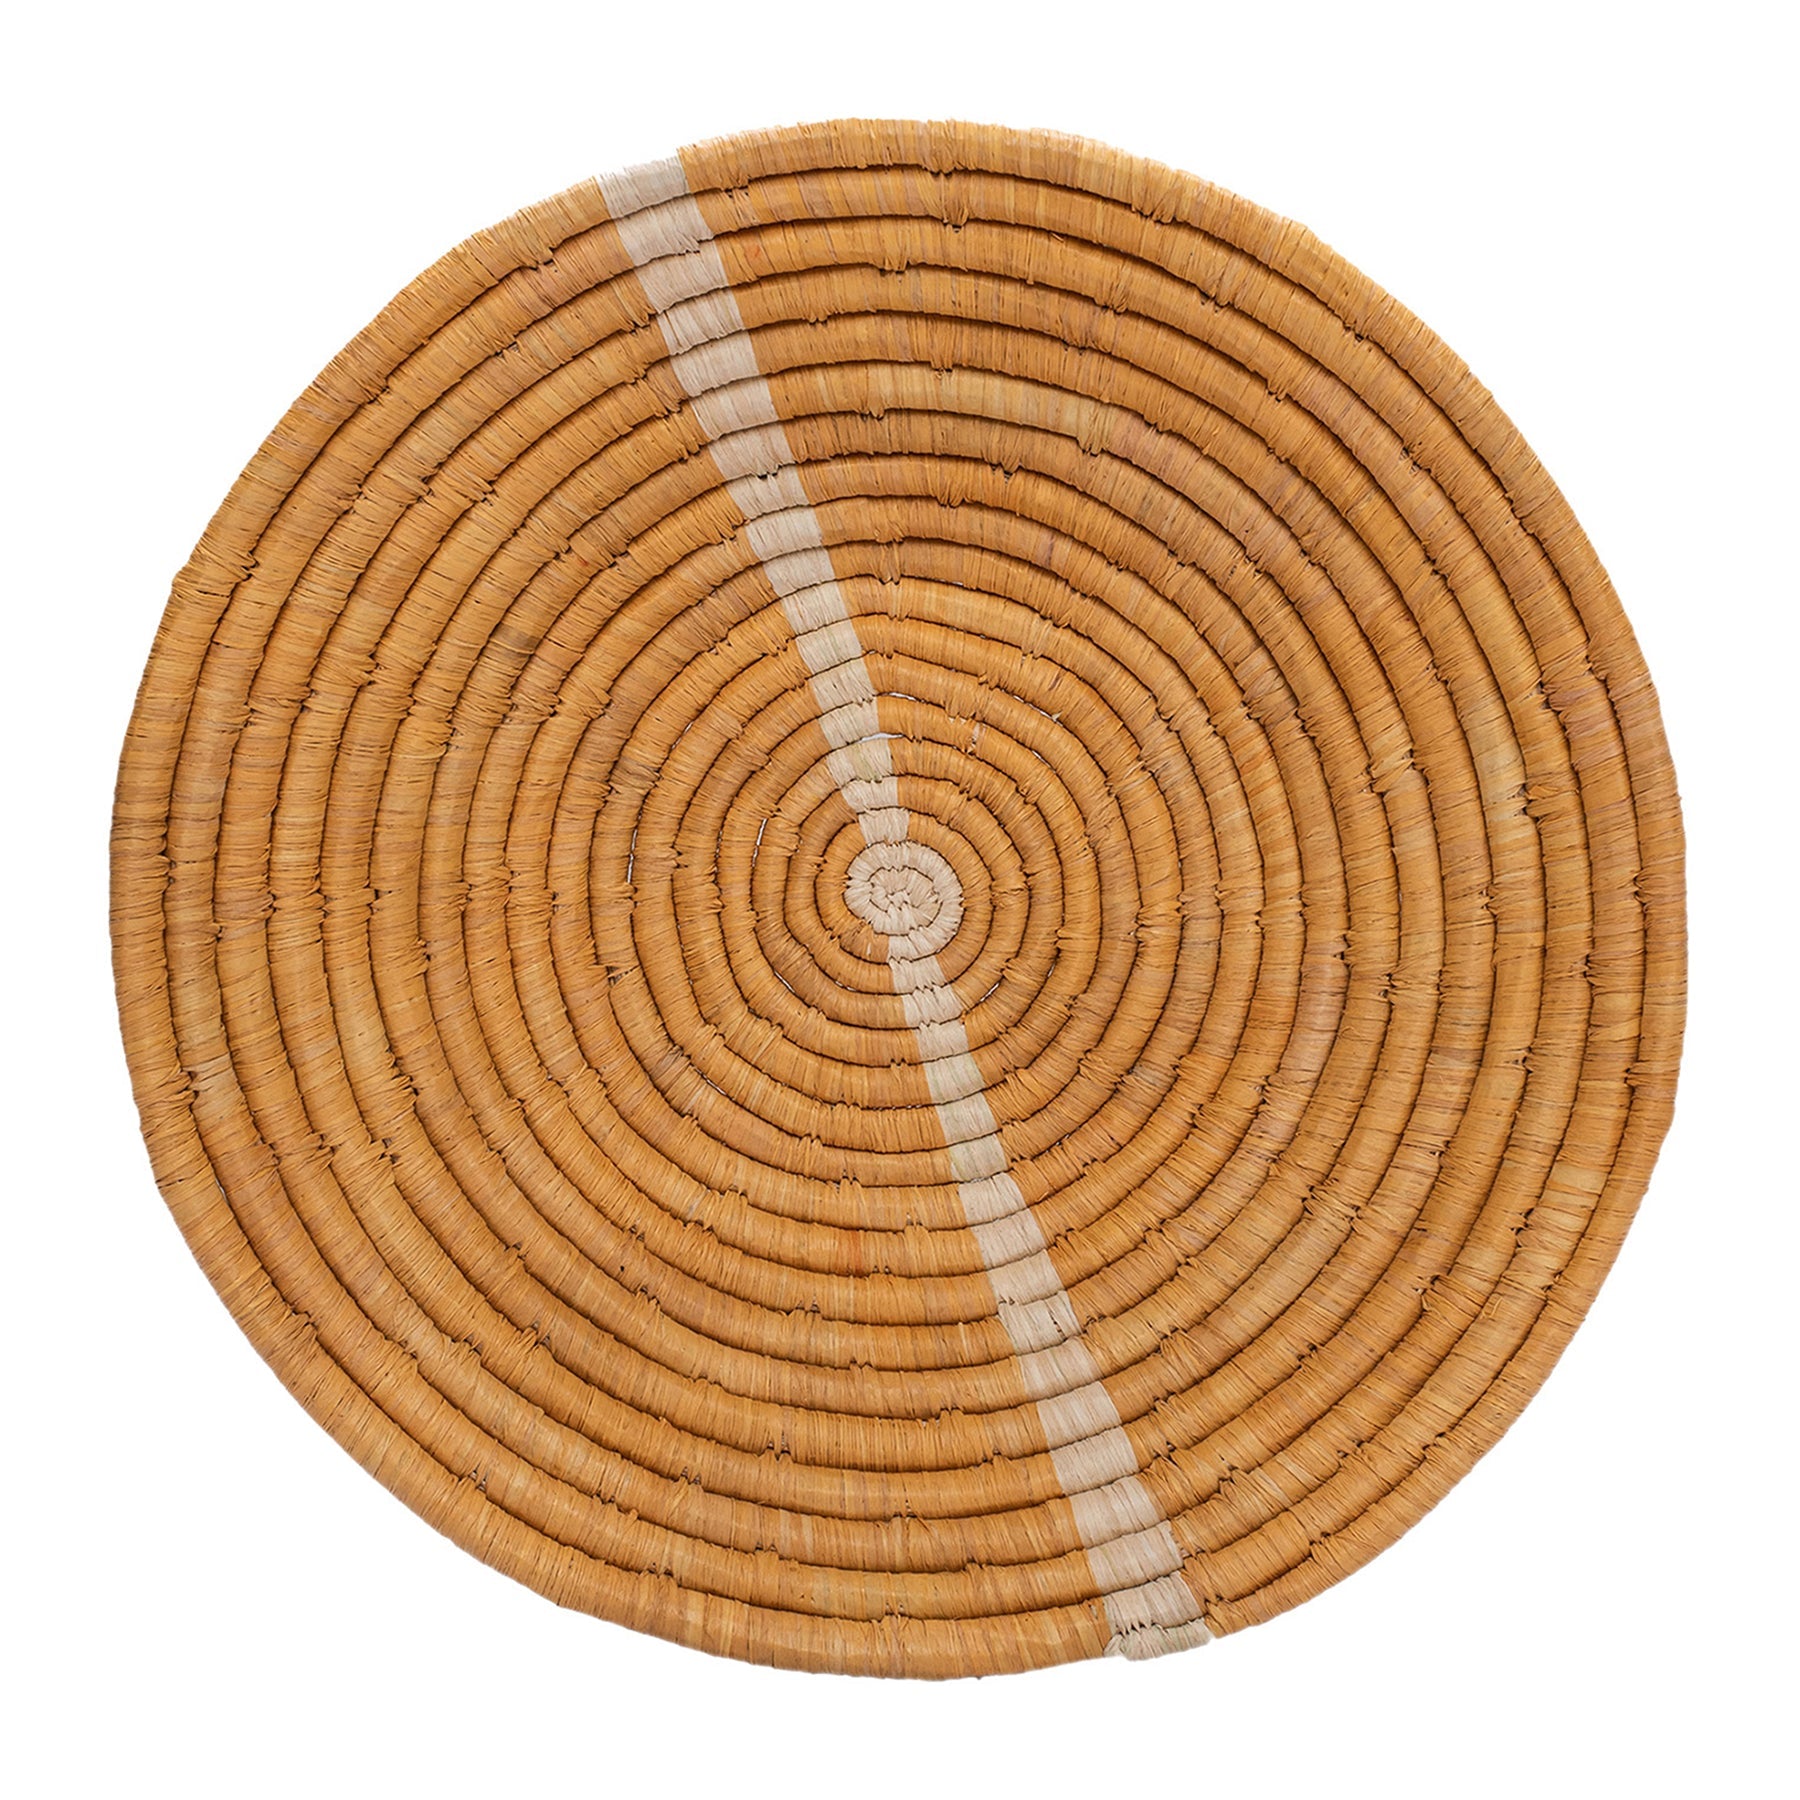 12" Large Tan Striped Round Basket